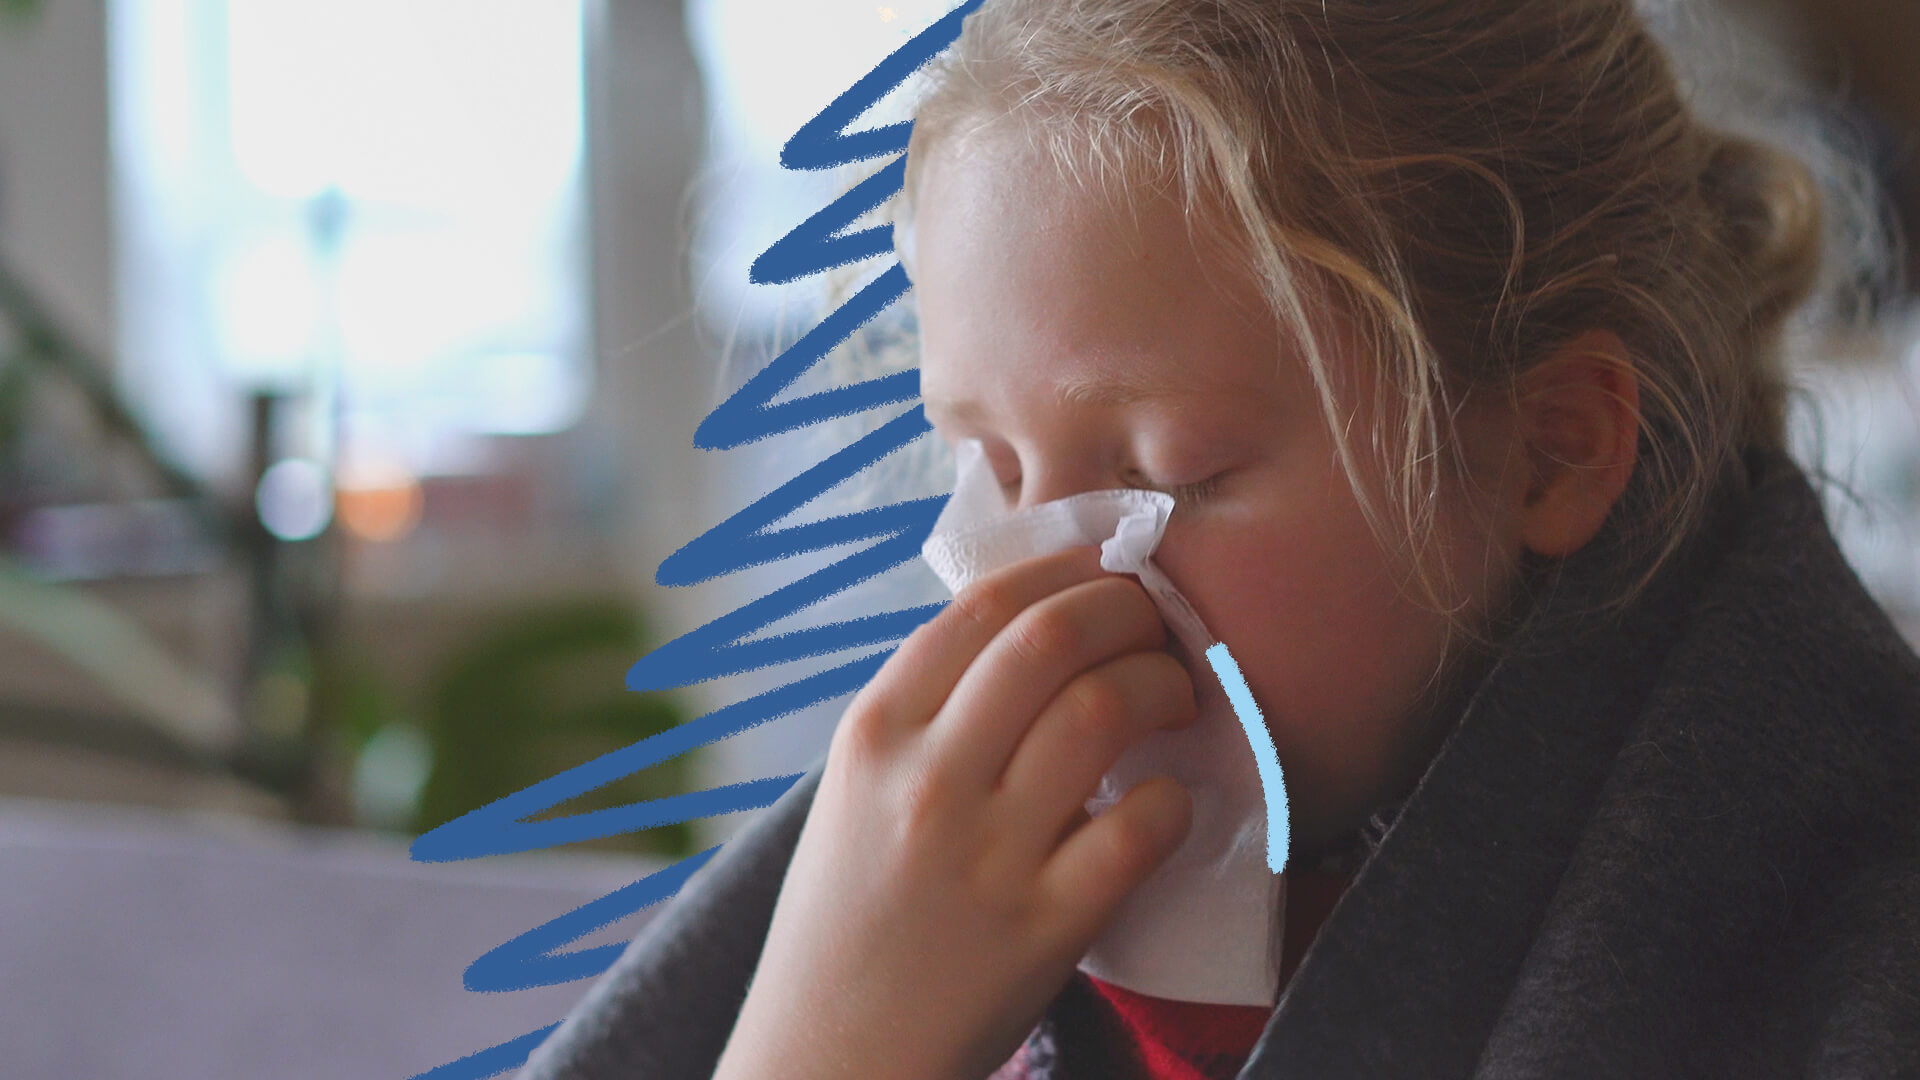 Na foto, uma menina de pele clara espirra e limpa o nariz com um lenço de papel. A imagem possui intervenções de rabiscos coloridos em tom azul escuro.